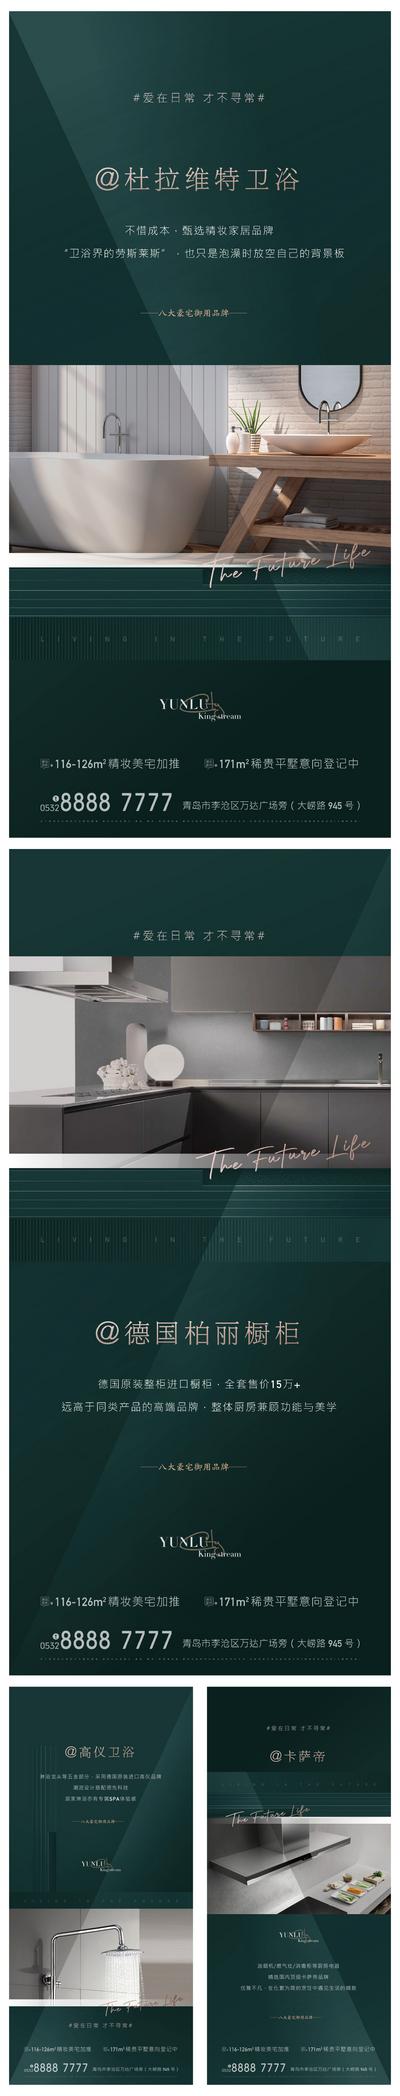 南门网 广告 海报 地产 精装房 价值点 卫浴 橱柜 系列